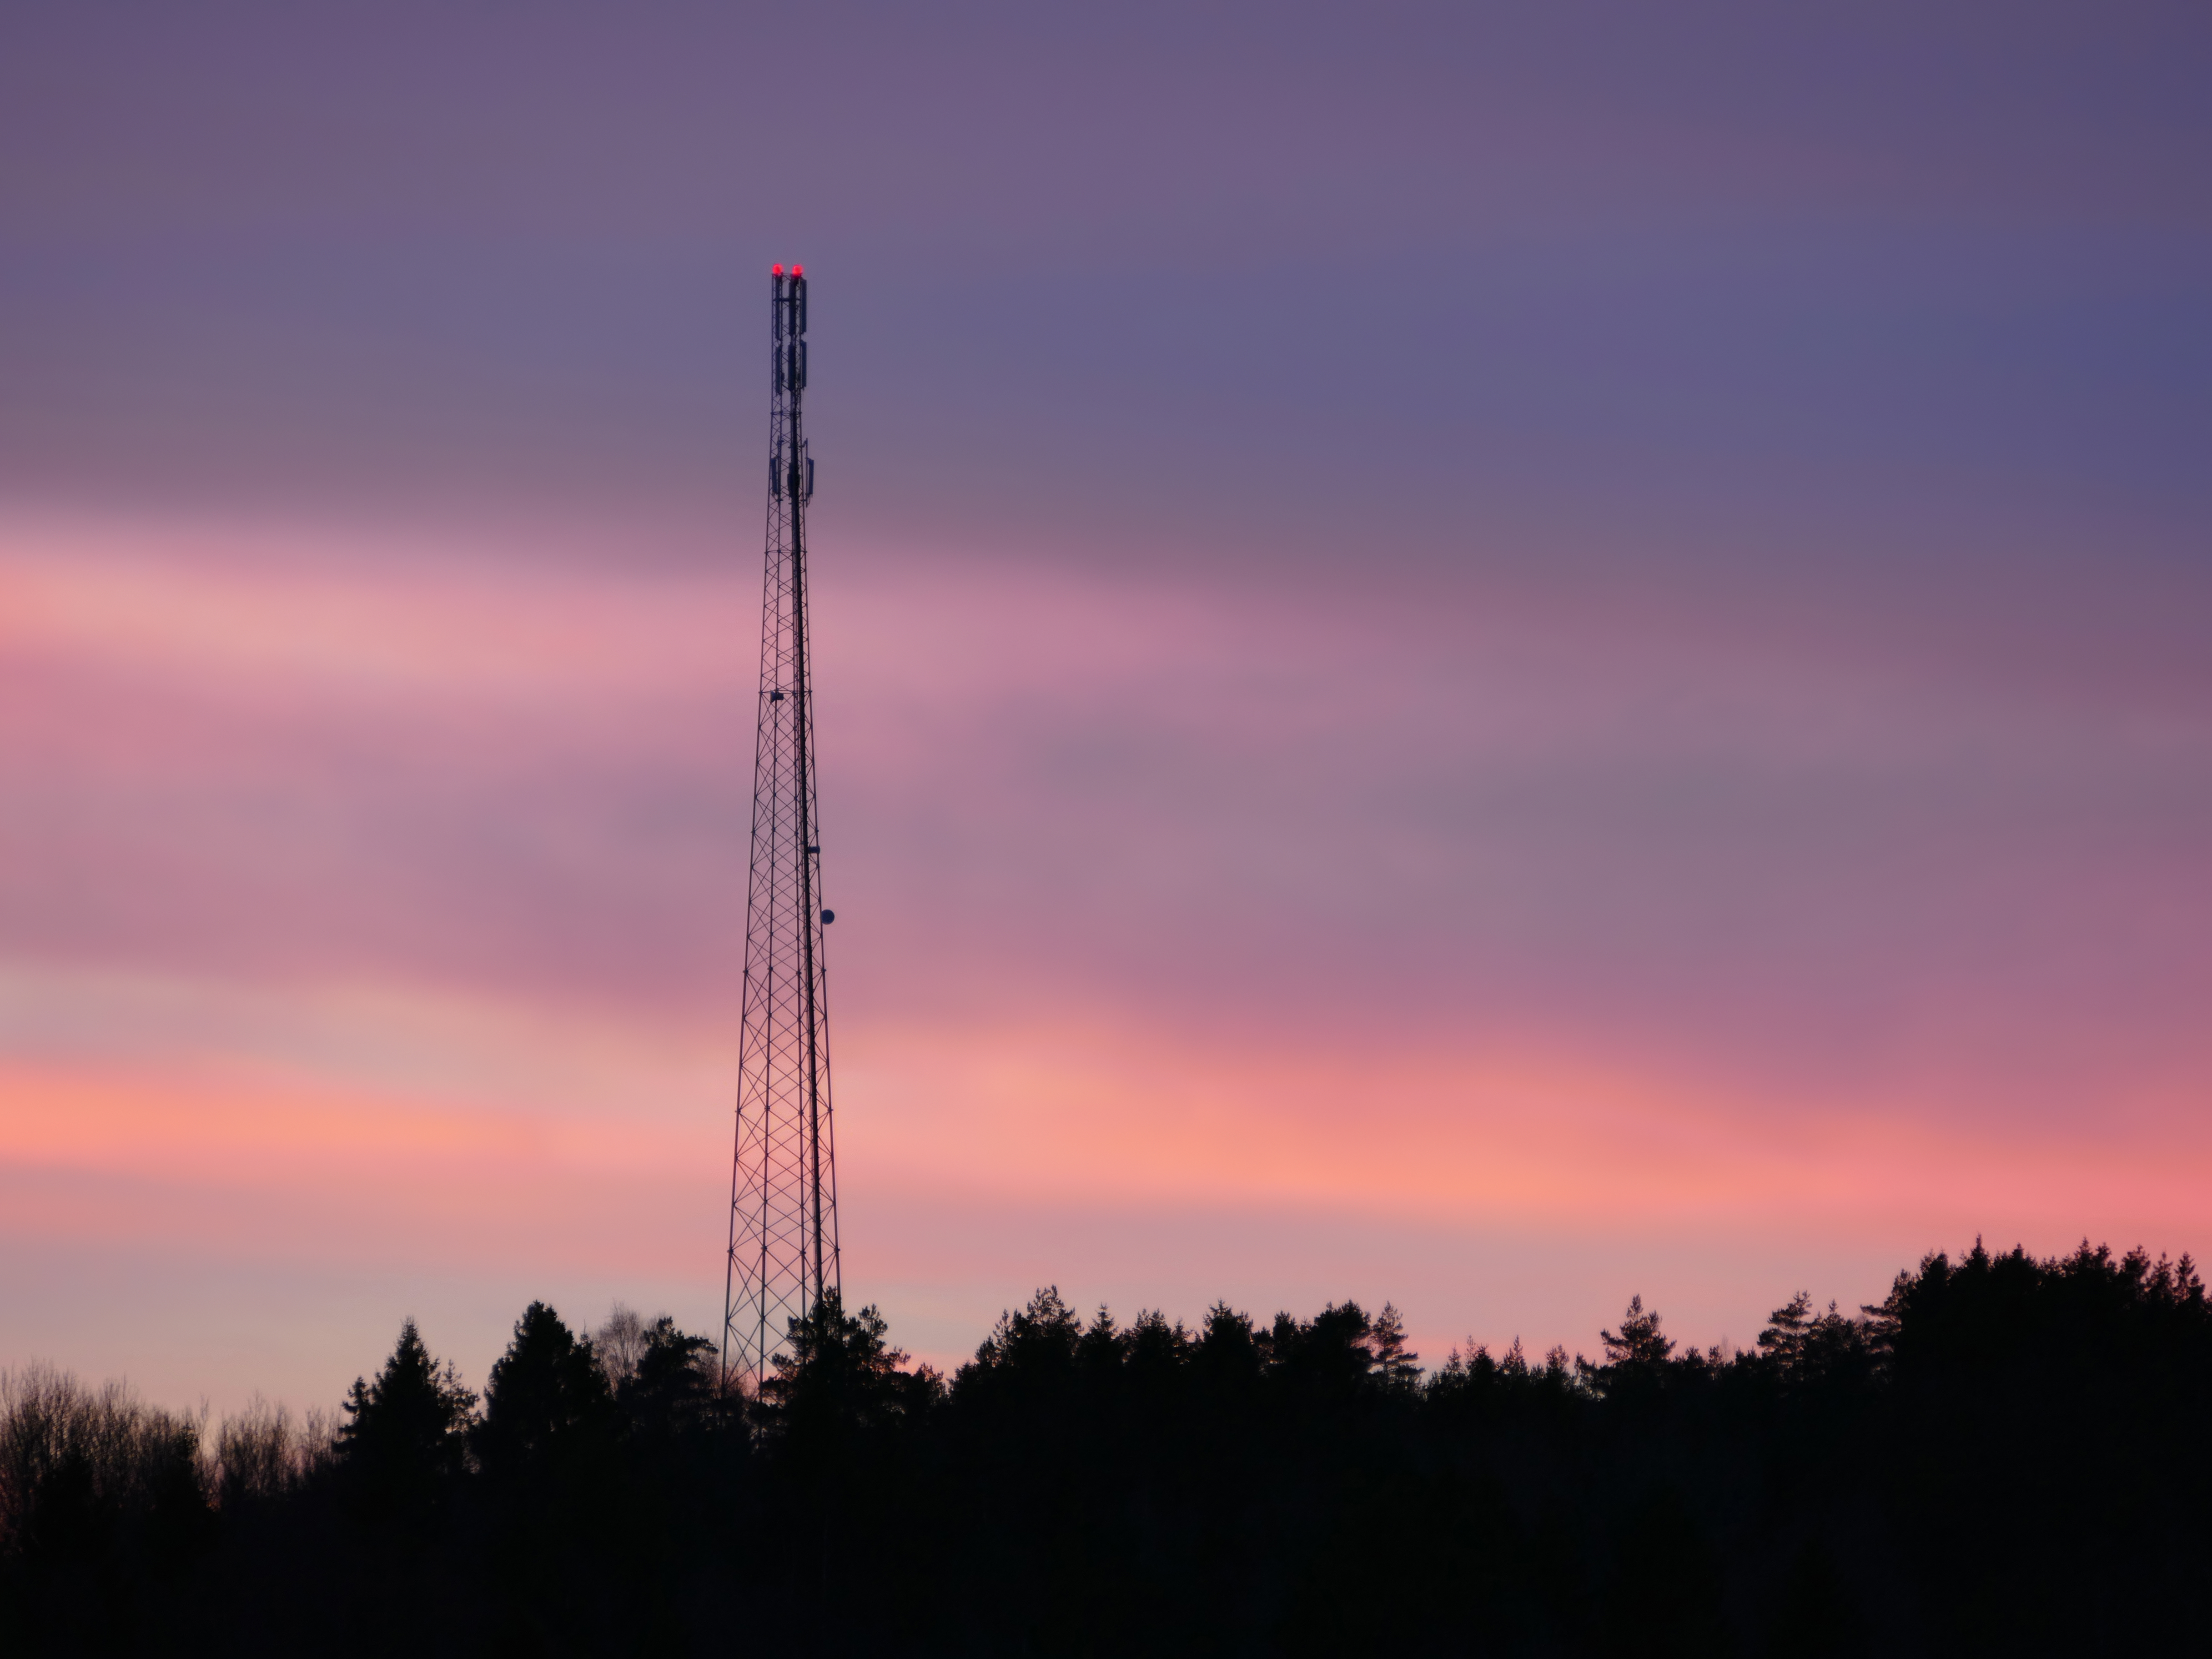 Telecommunications mast at sunset